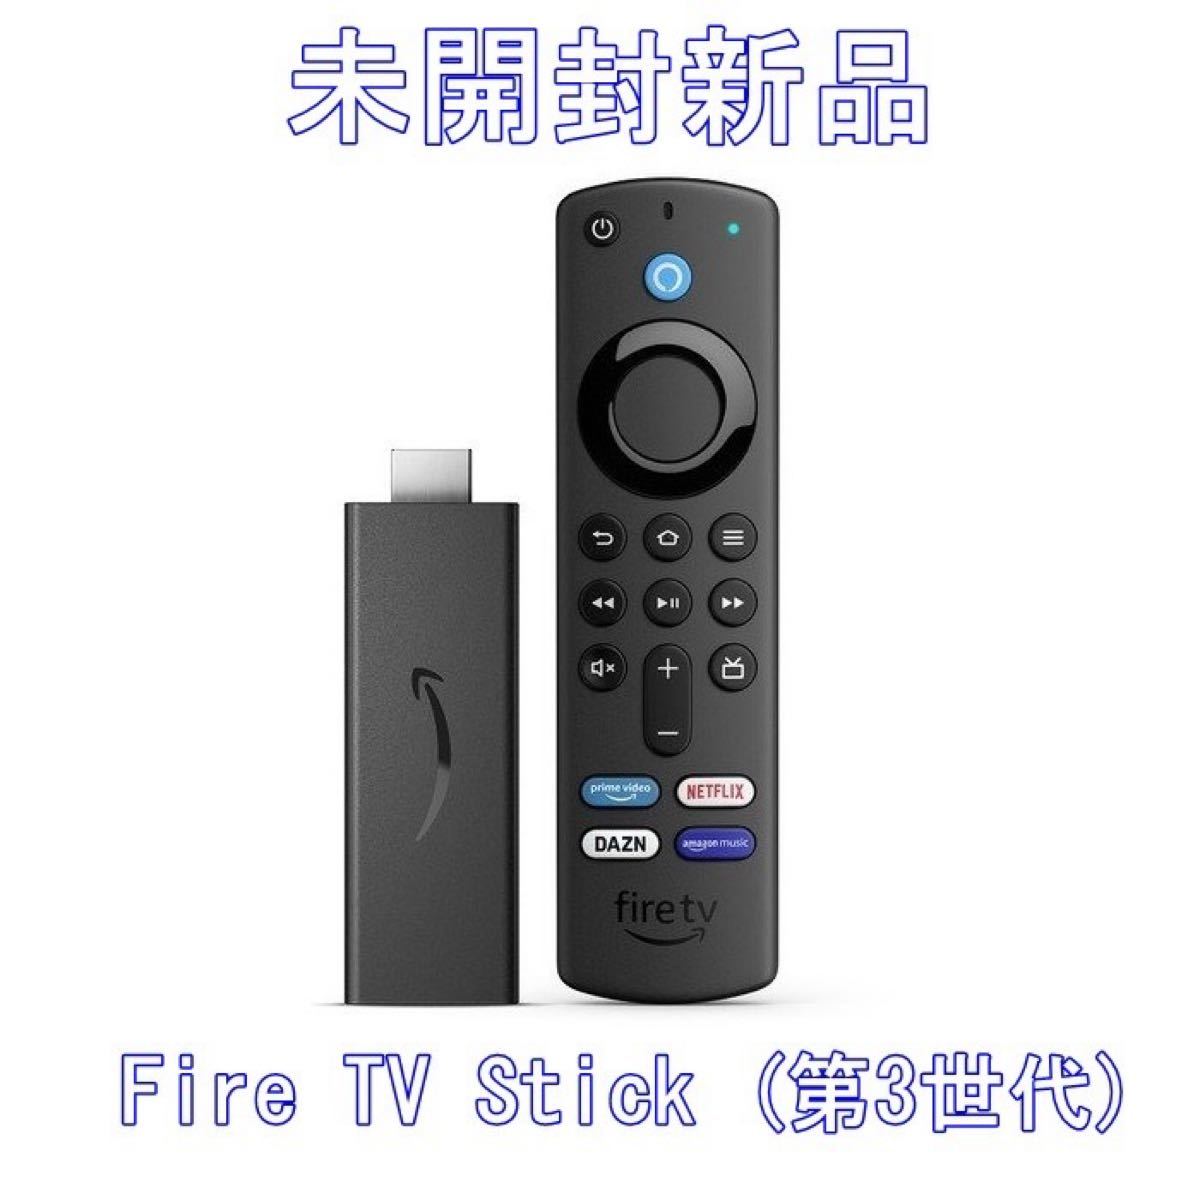 大特価!!Amazon Fire TV Stick (第3世代)Alexa対応音声認識リモコン付属 その他AV周辺機器 テレビ、映像機器  テレビ、オーディオ、カメラ￥9,000-www.firefreeze.com